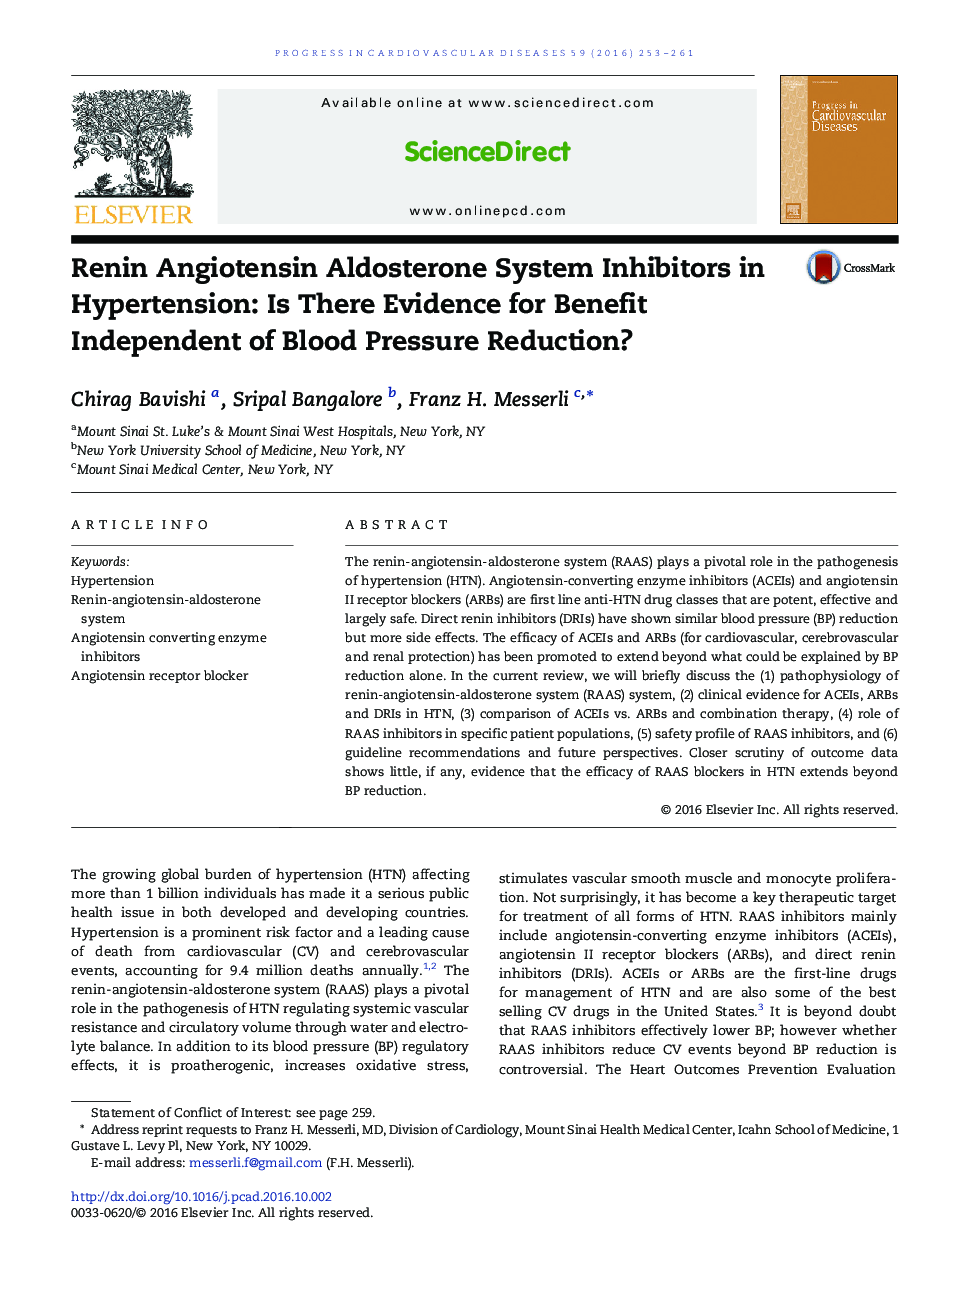 مهار کننده های سیستم آنژیوتانسین رینین آلدوسترون در پرفشاری خون: آیا برای اثربخشی مستقل از کاهش فشار خون اثبات شده است؟ 